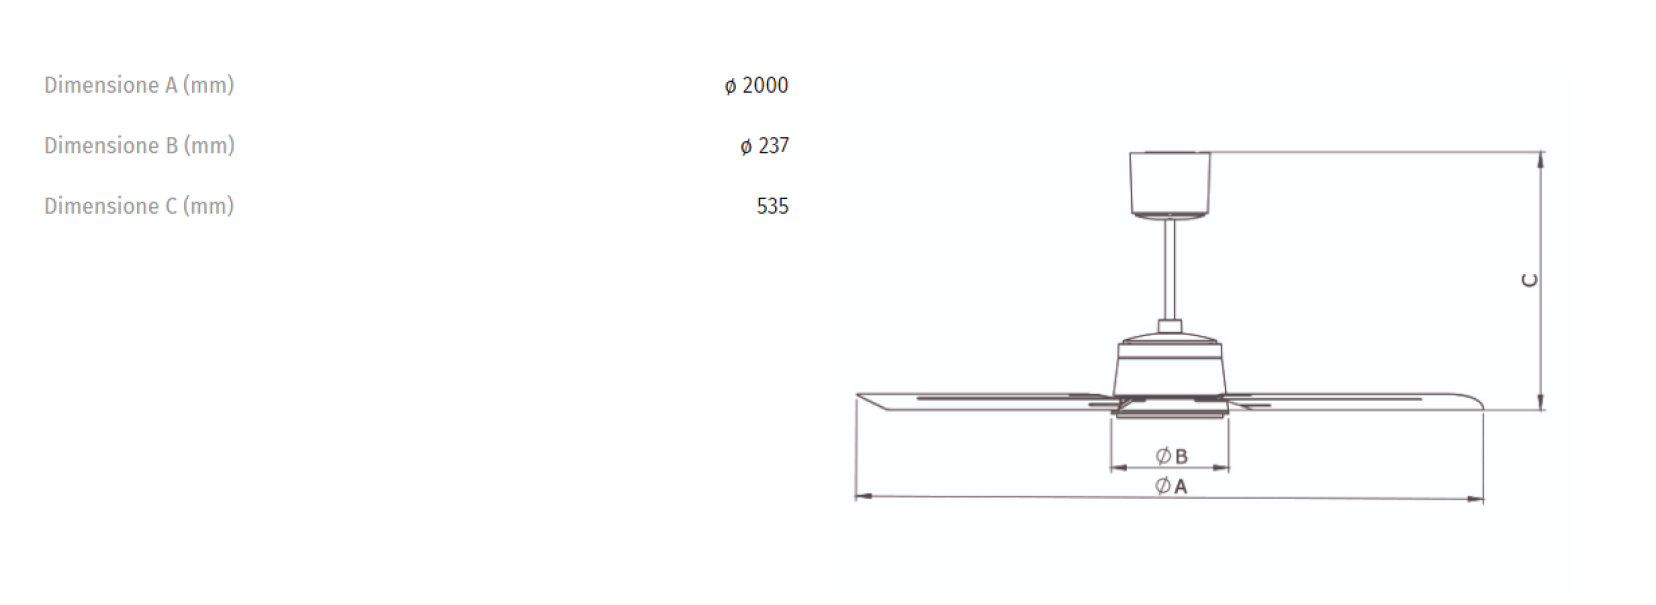 Ventilatore da soffitto Vortice Nordik Eco 200/80 reversibile a risparmio energetico - 0000061065 02